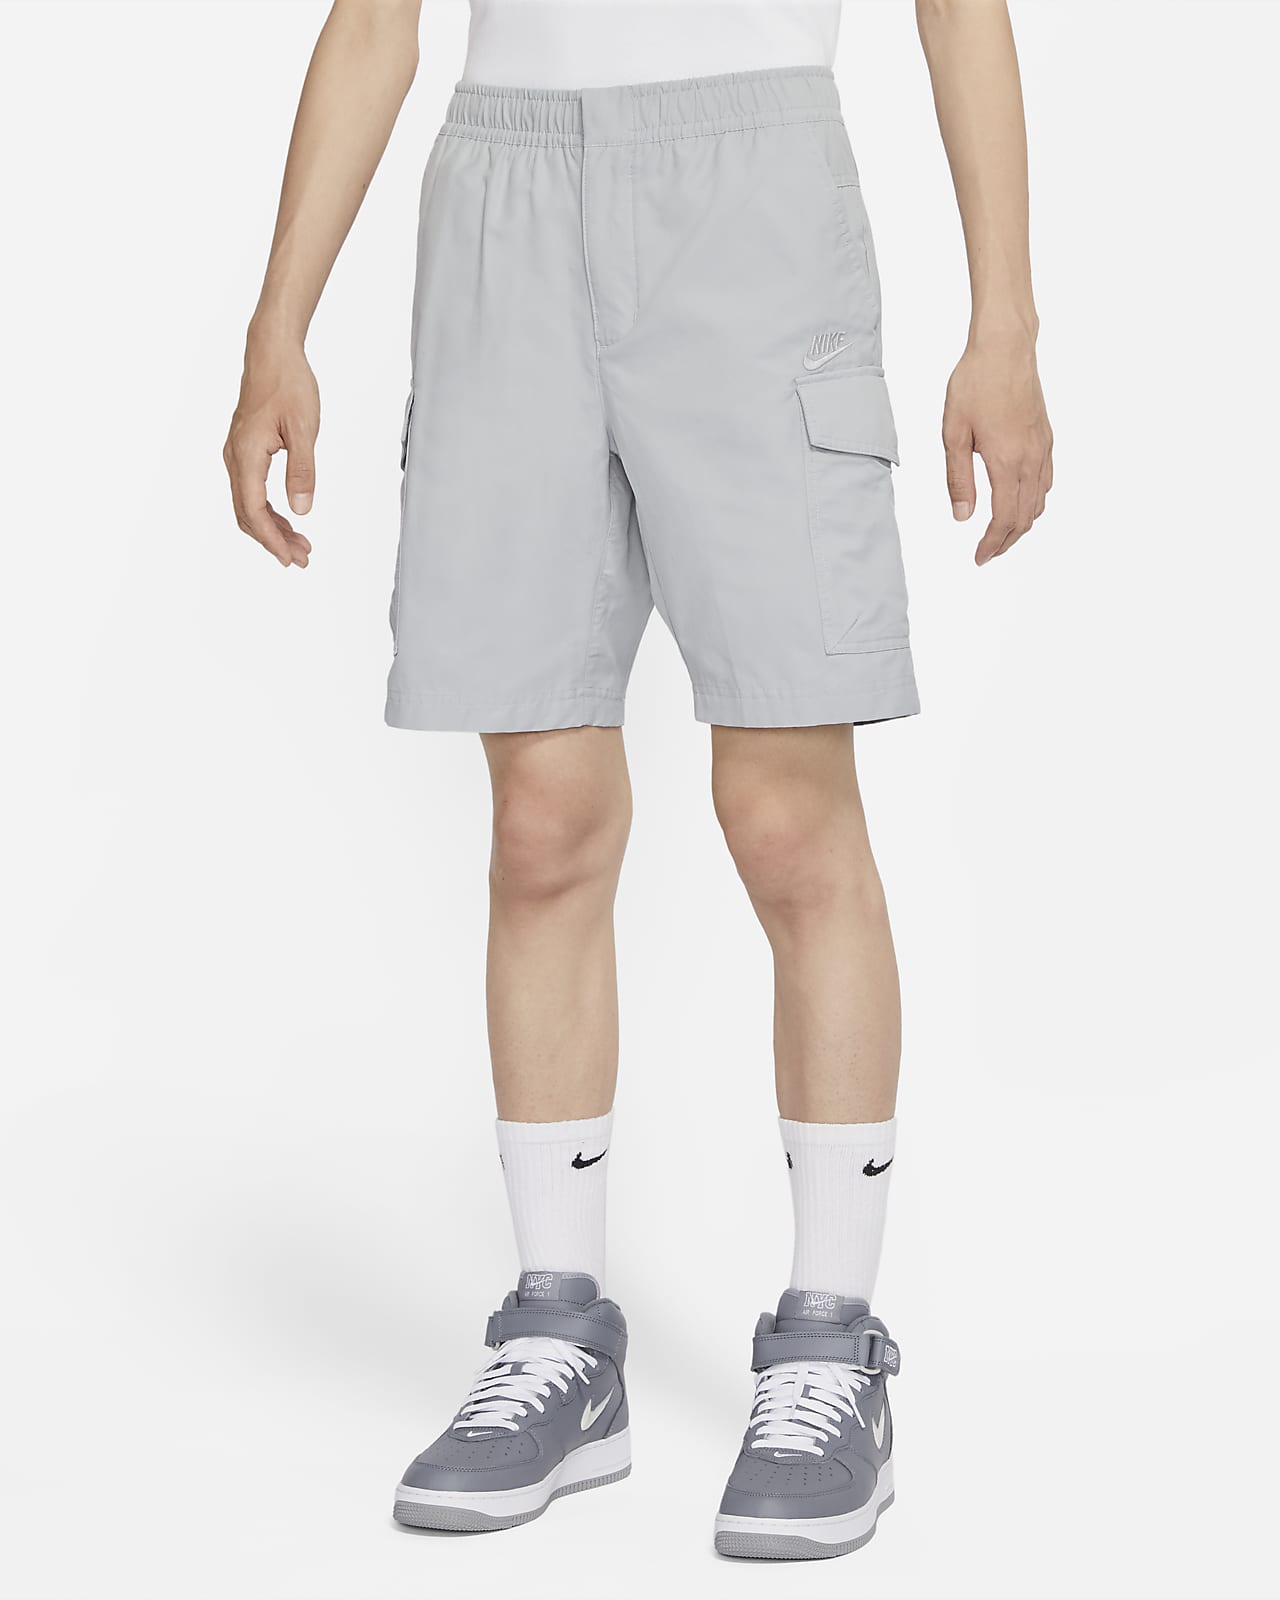 Nike Sportswear Men's Unlined Utility Cargo Shorts. Nike SG